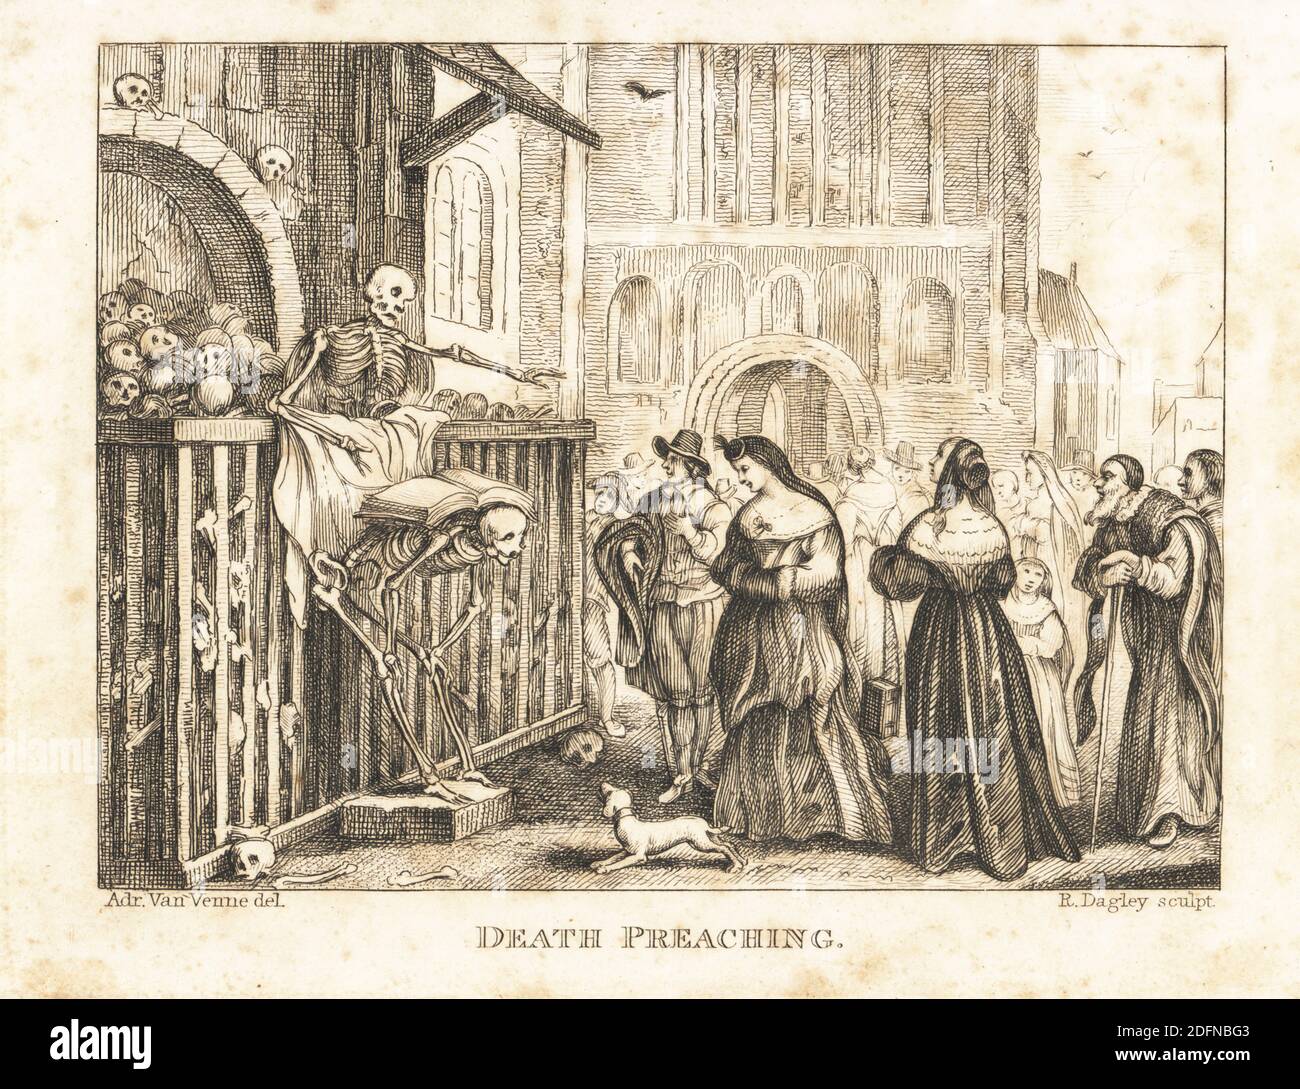 Lo scheletro della predicazione della morte ad una folla. La morte si trova in una necropoli di ossa e teschi, e appoggia la sua ledger su uno scheletro accovacciato. Signore benestanti, signori, un vecchio e un orologio per bambini. Predicazione della morte. Incisione in acciaio di Richard Dagley dopo un’illustrazione del 1654 di Adriaen van de Venne dalle azioni della morte di Dagley, composta da numerose composizioni originali in versi e prosa, J. Andrews, Londra, 1827. Dagley (1761-1841) è stato un . Foto Stock